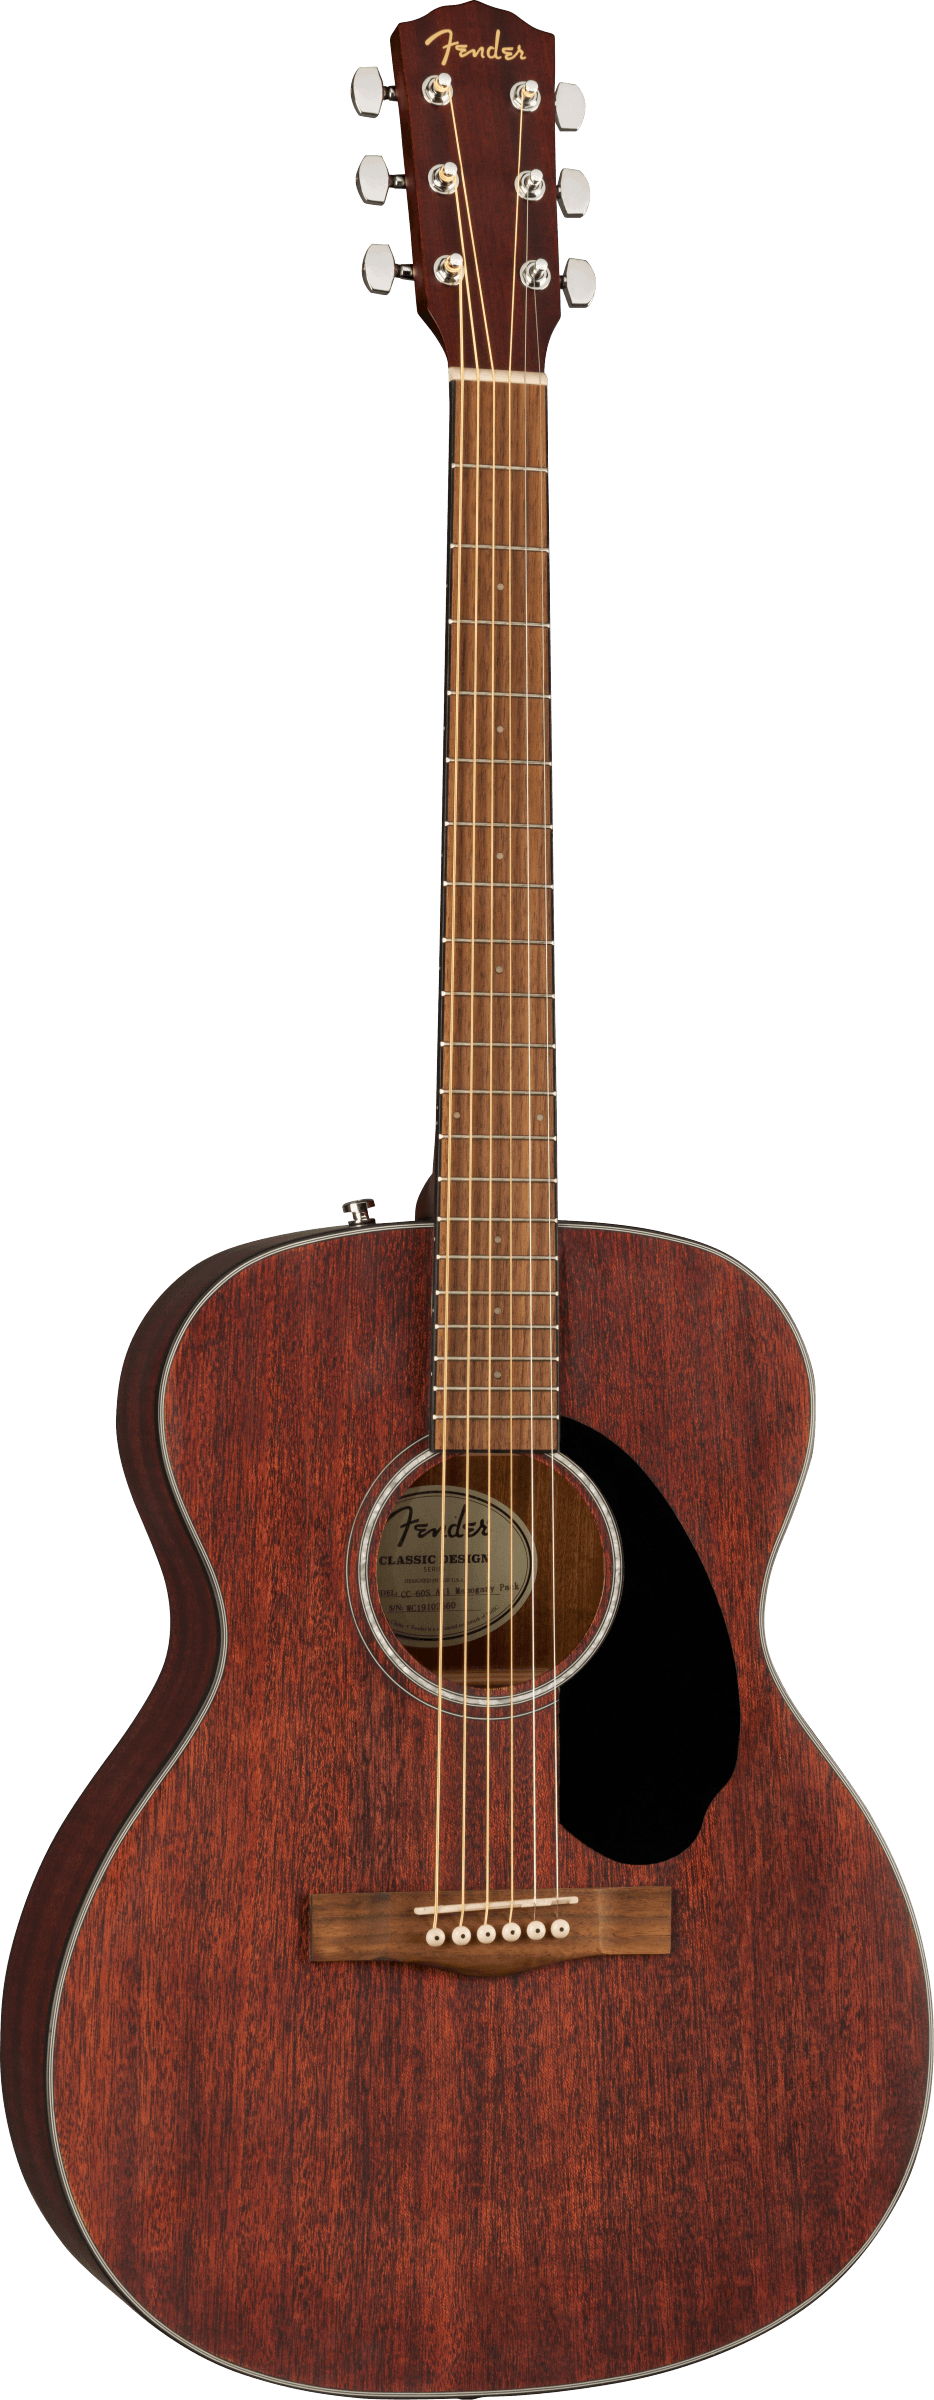 Fender CC-60s Concert All Mahogany Acoustic Guitar